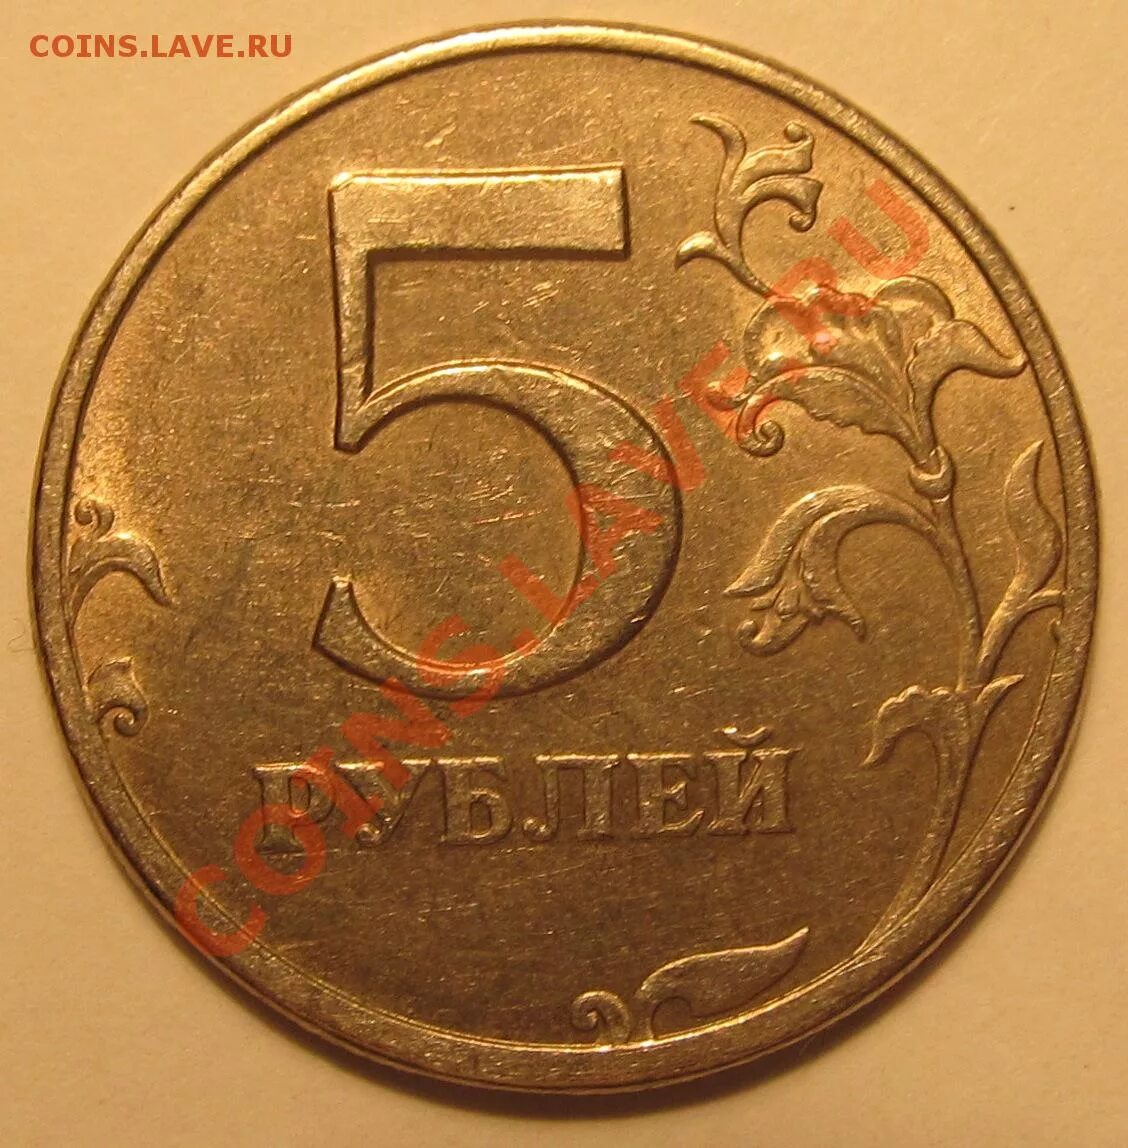 2 рубль 1997 года цена стоимость. 5 Рублей 1998 СПМД -шт. 2.21-2.22. Бракованная 5 рублей 1997 года. Монеты 2005 5$. 2 Рубля 1997 СПДМ золото.